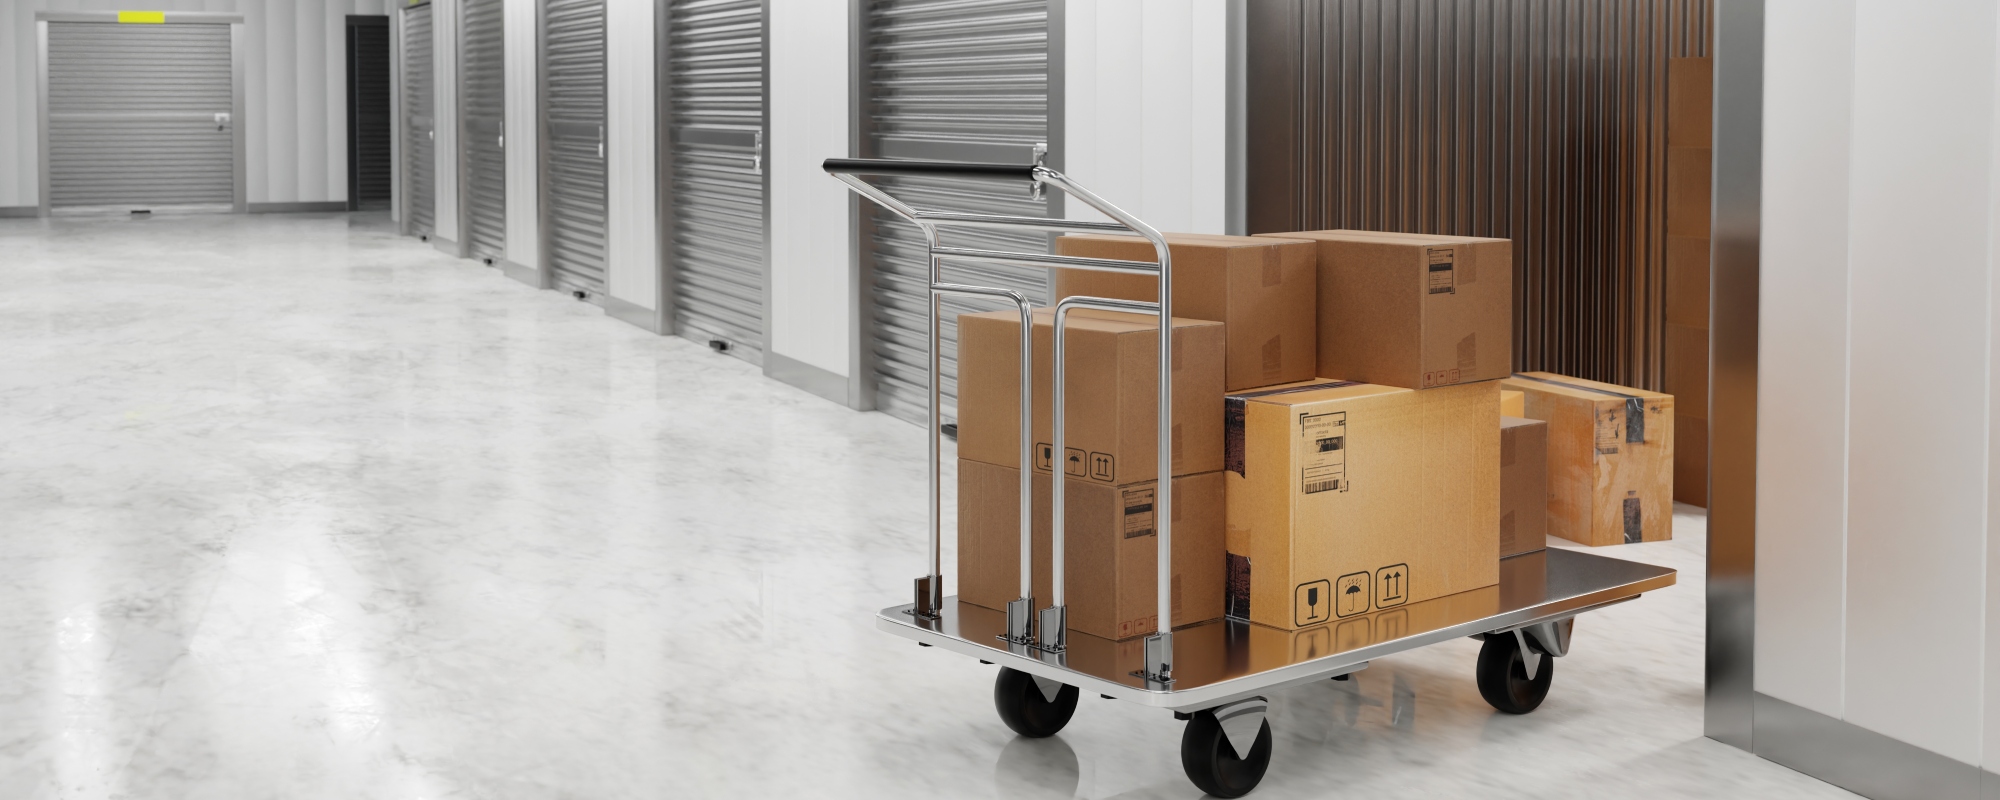 Pourquoi le stockage de vos biens en garde-meubles est intéressant dans le cadre d’un déménagement ?  